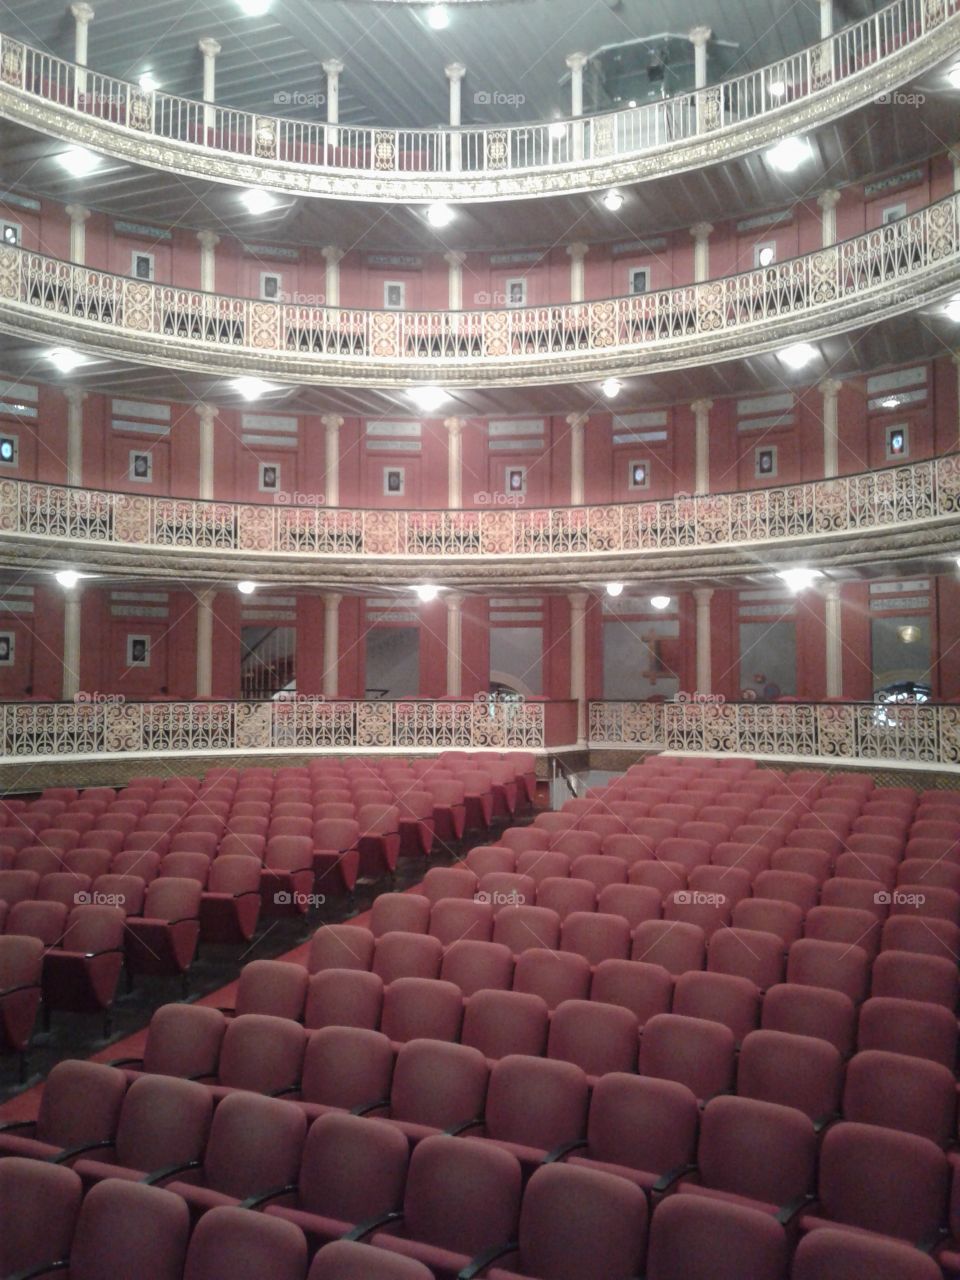 Teatro de Santa Isabel - Recife/